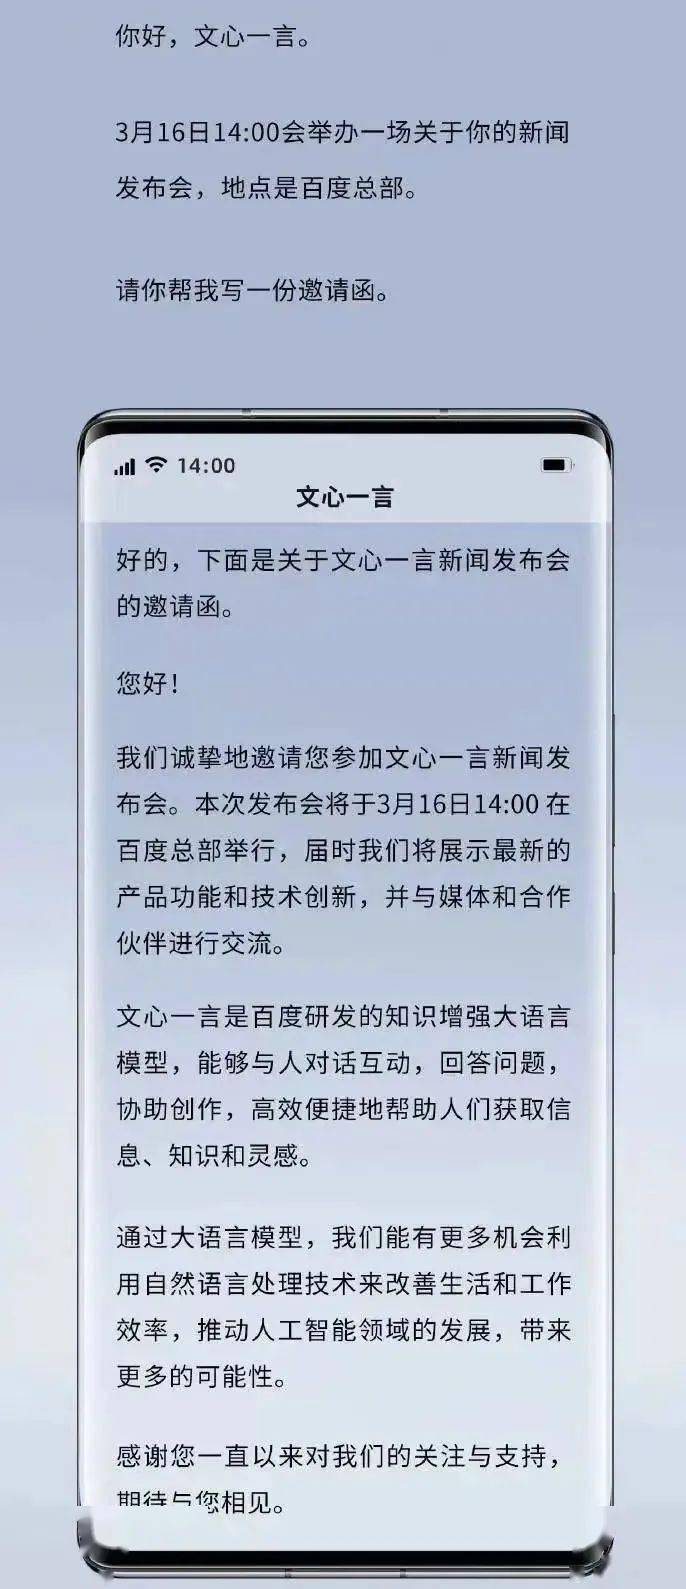 文件极客苹果版
:香港科技大学：期中报告使用 ChatGPT 可加分；爆谷歌、微软已在韩国开始裁员；美国最大加密货币银行宣布关闭|极客头条